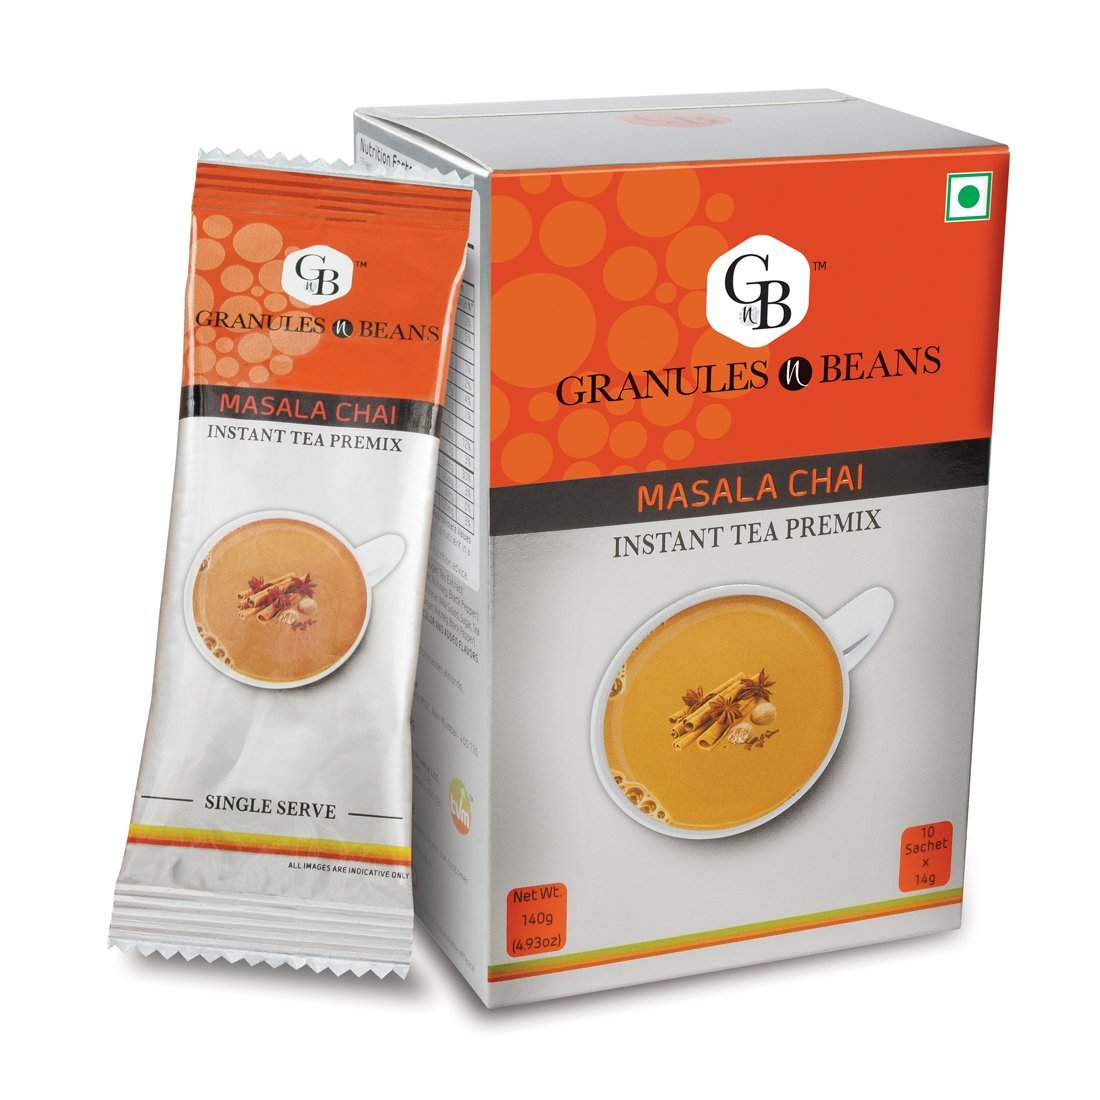 Granules n Beans Masala Chai Instant tea Premix - (10 Sachet x 14g = 140g) (Pack of 2)